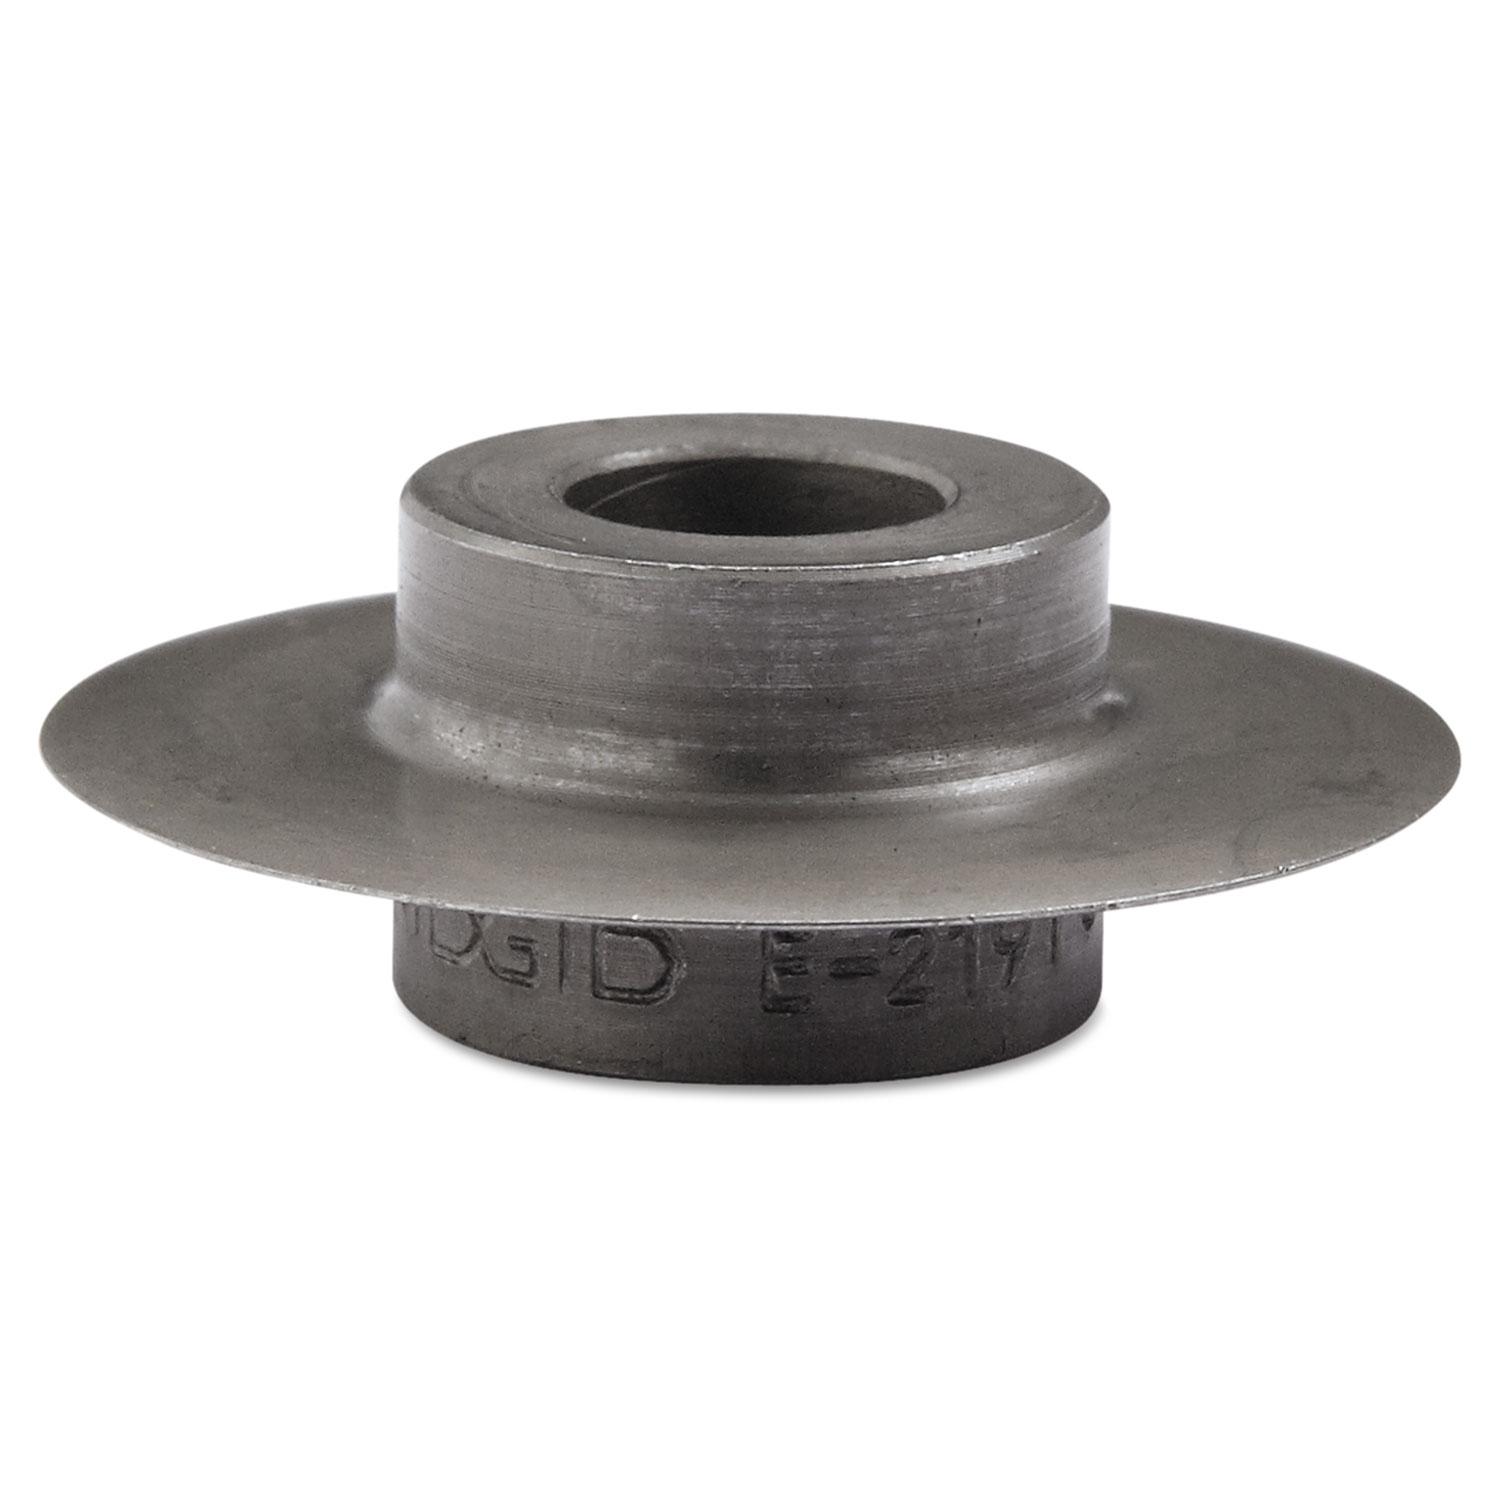  RIDGID 33175 Heavy-Duty Pipe Cutter Wheel (RID33175) 